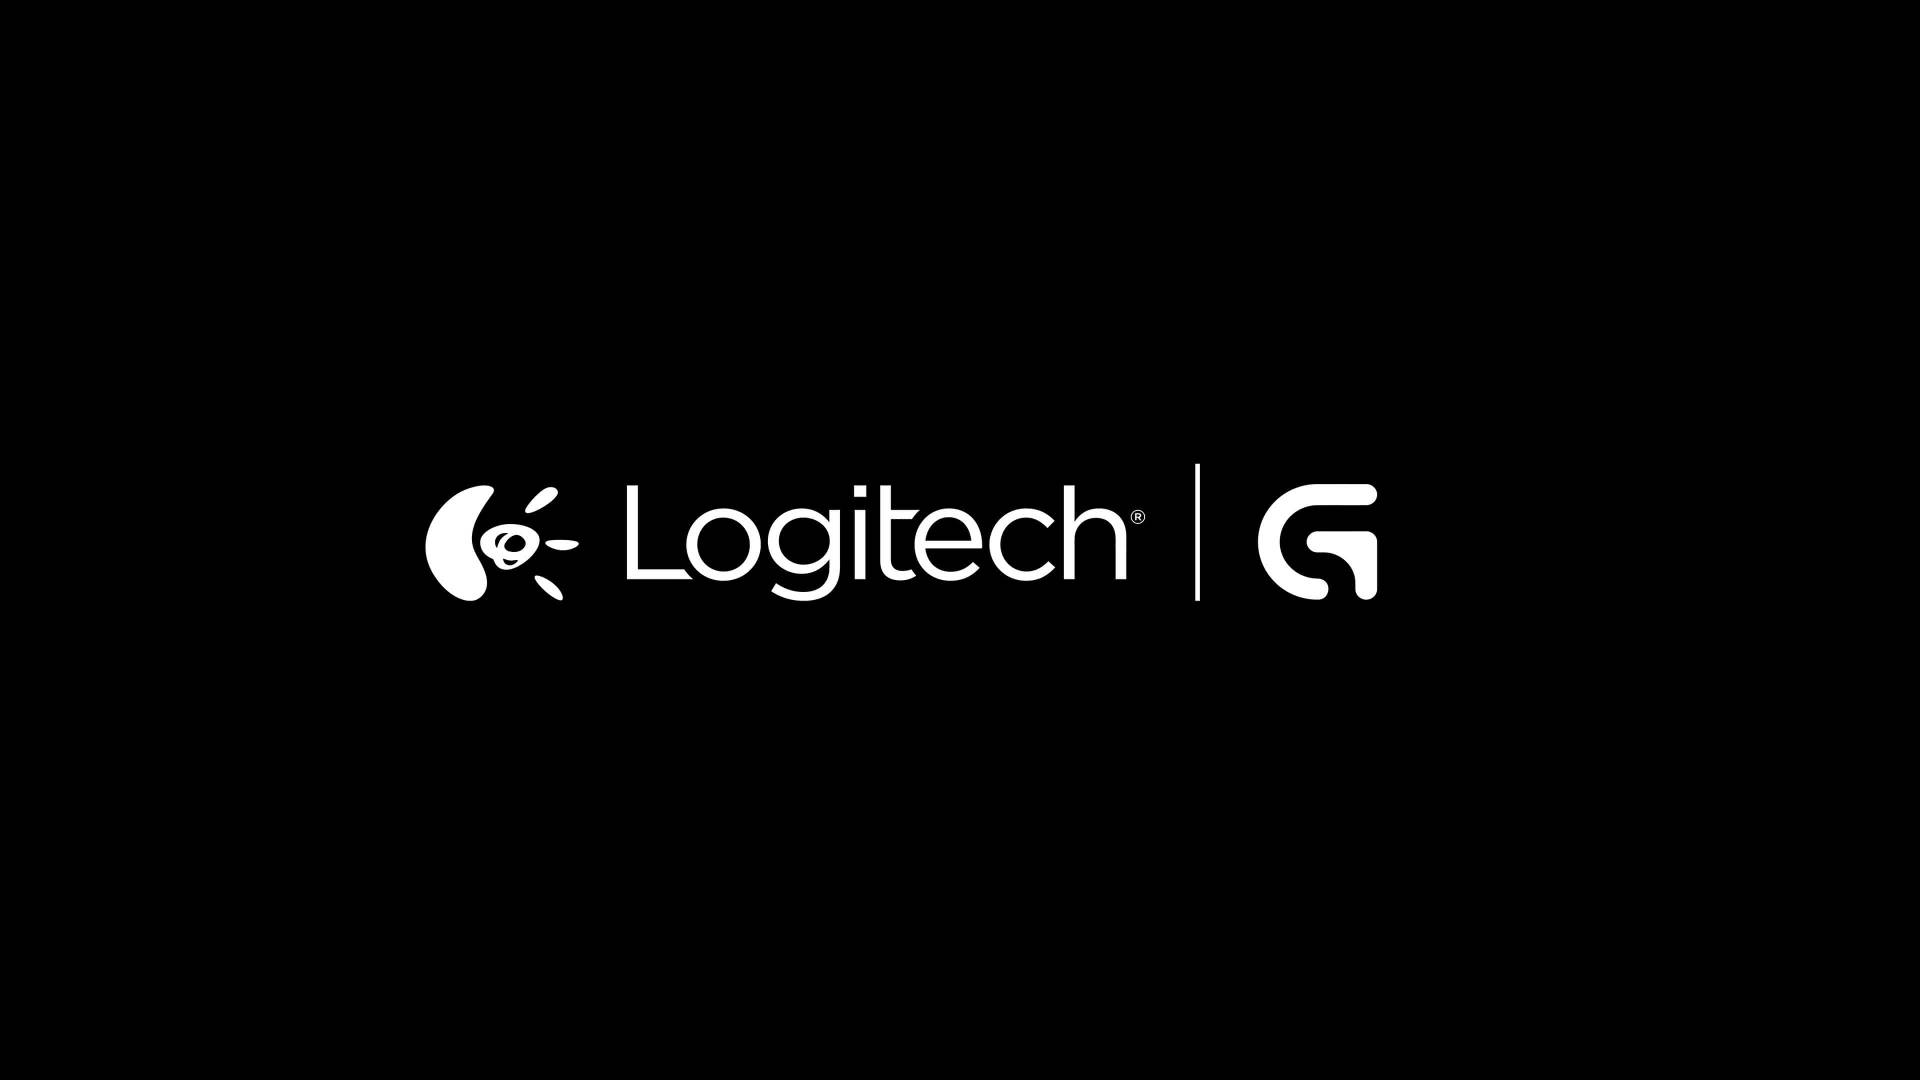 Offiziellelogitech-logos Wallpaper